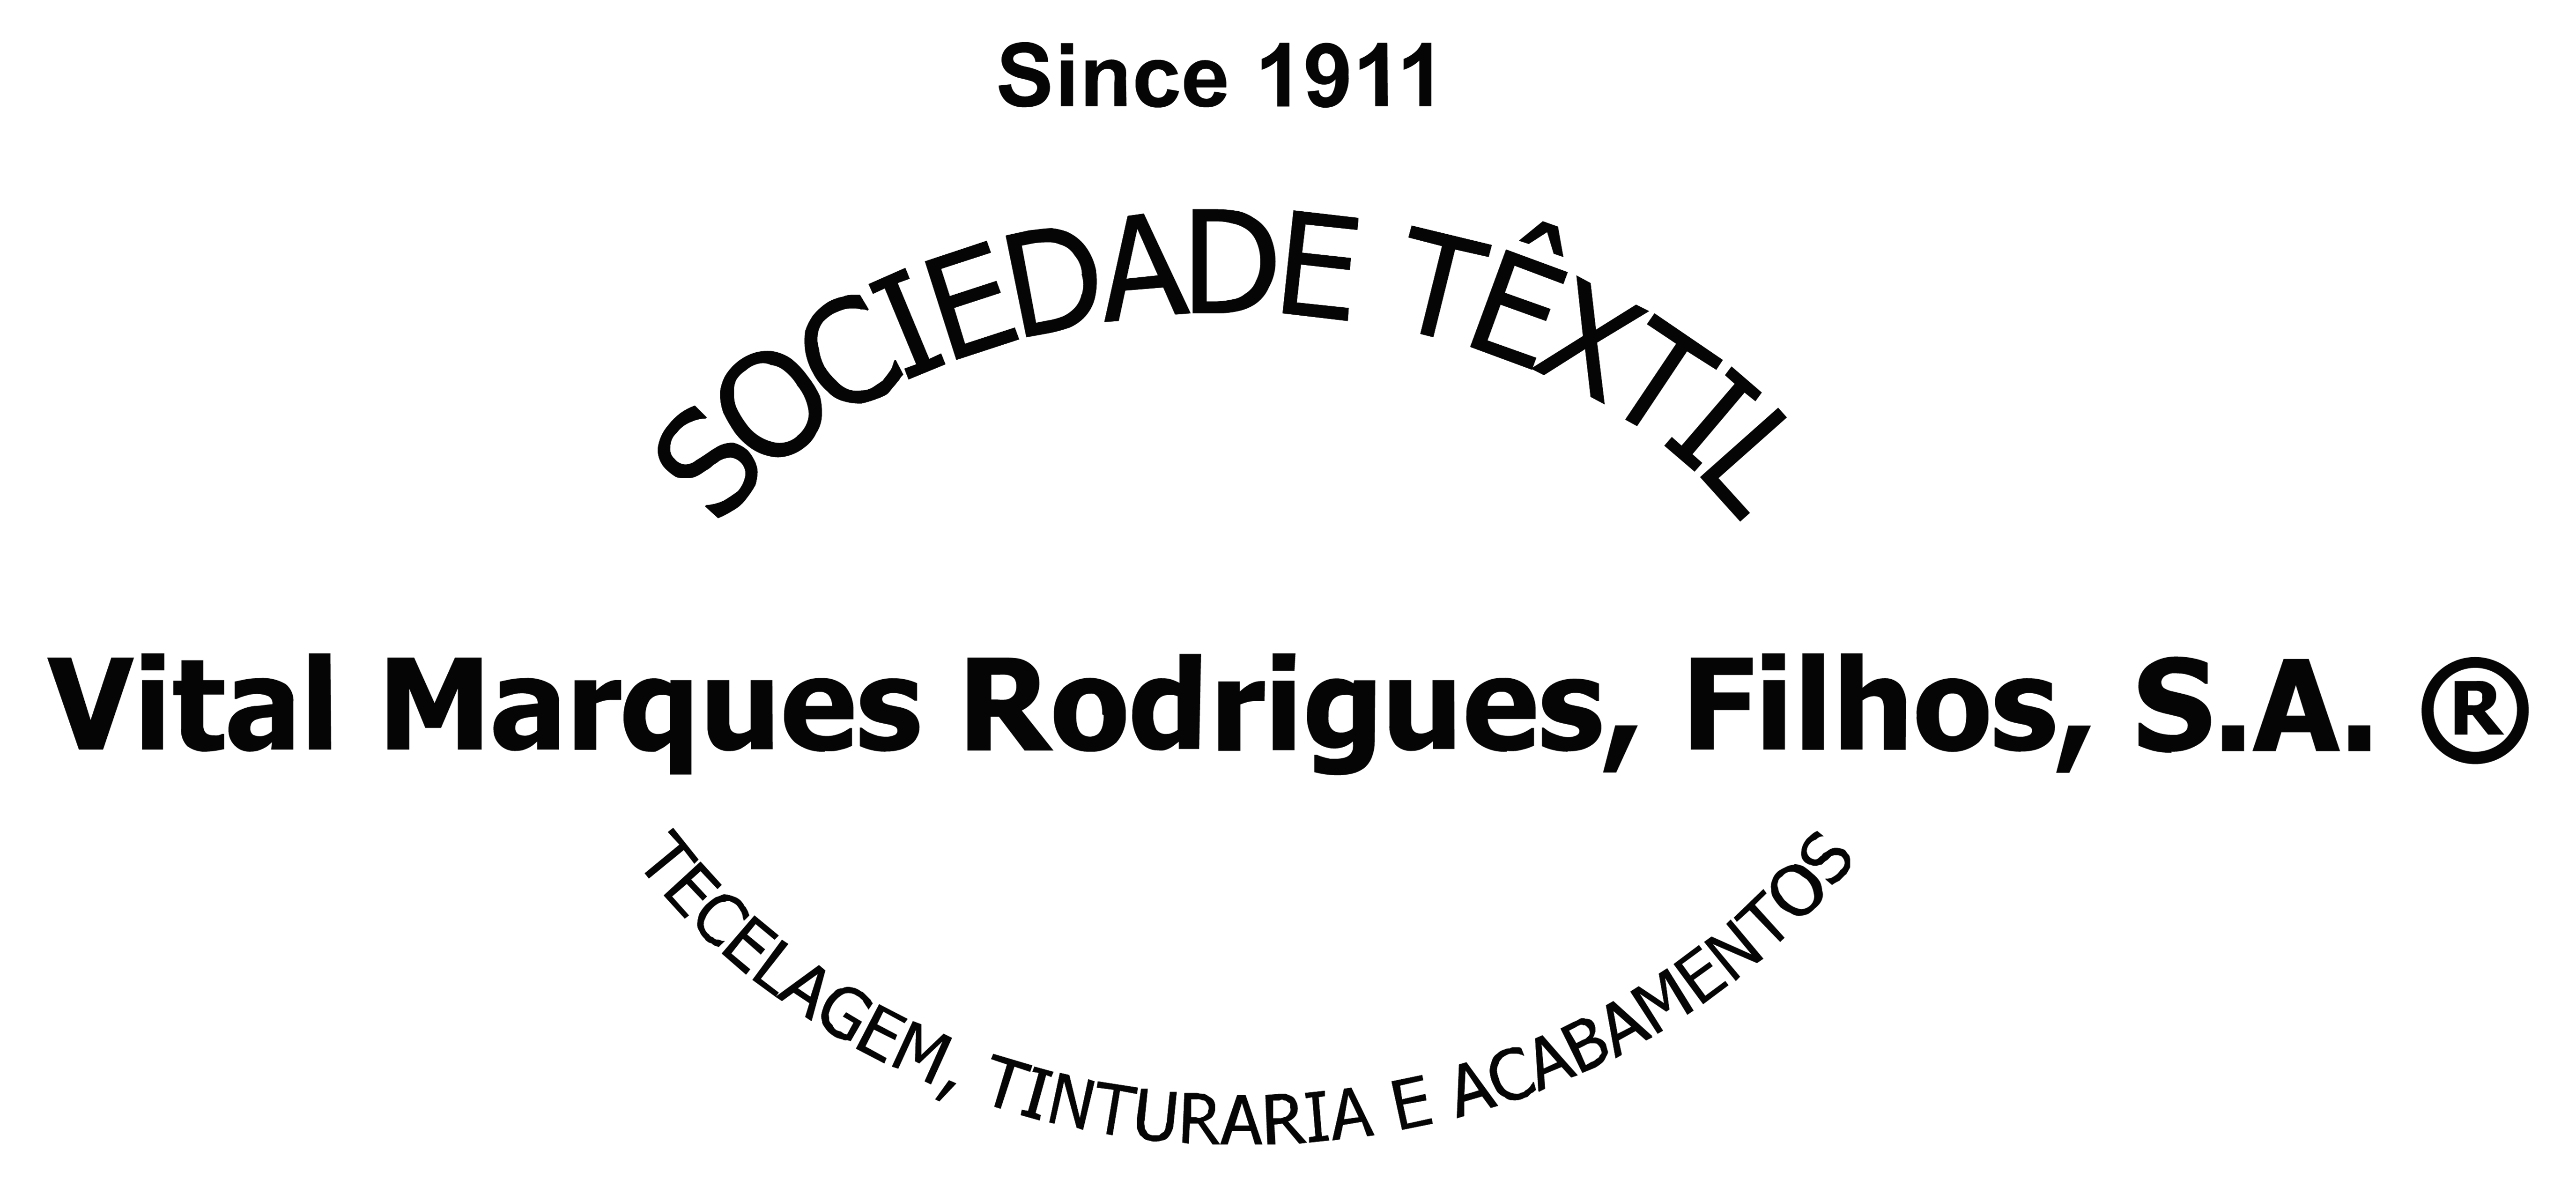 Sociedade Têxtil Vital Marques Rodrigues